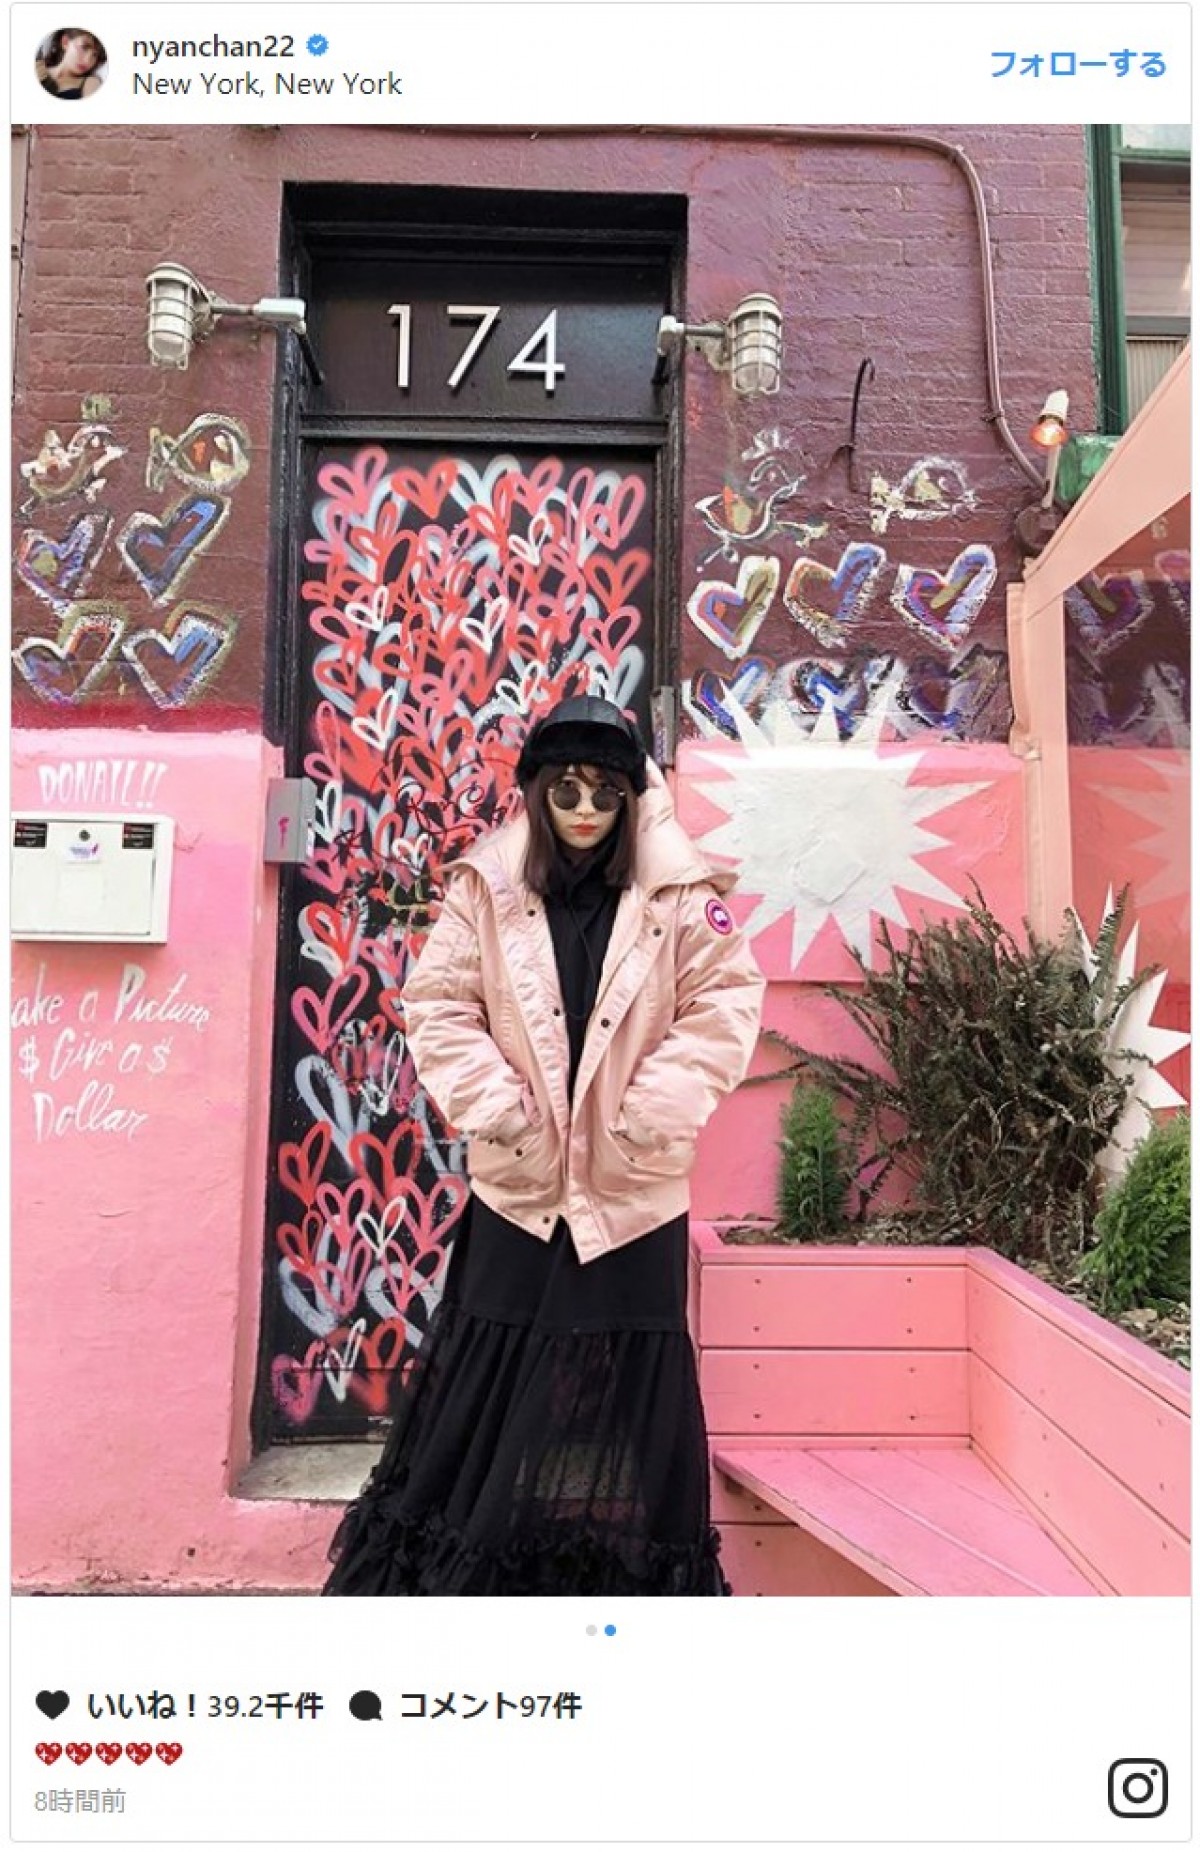 小嶋陽菜、ニューヨークの街角でたたずむ姿が圧巻のインスタ映え 「似合い過ぎ」